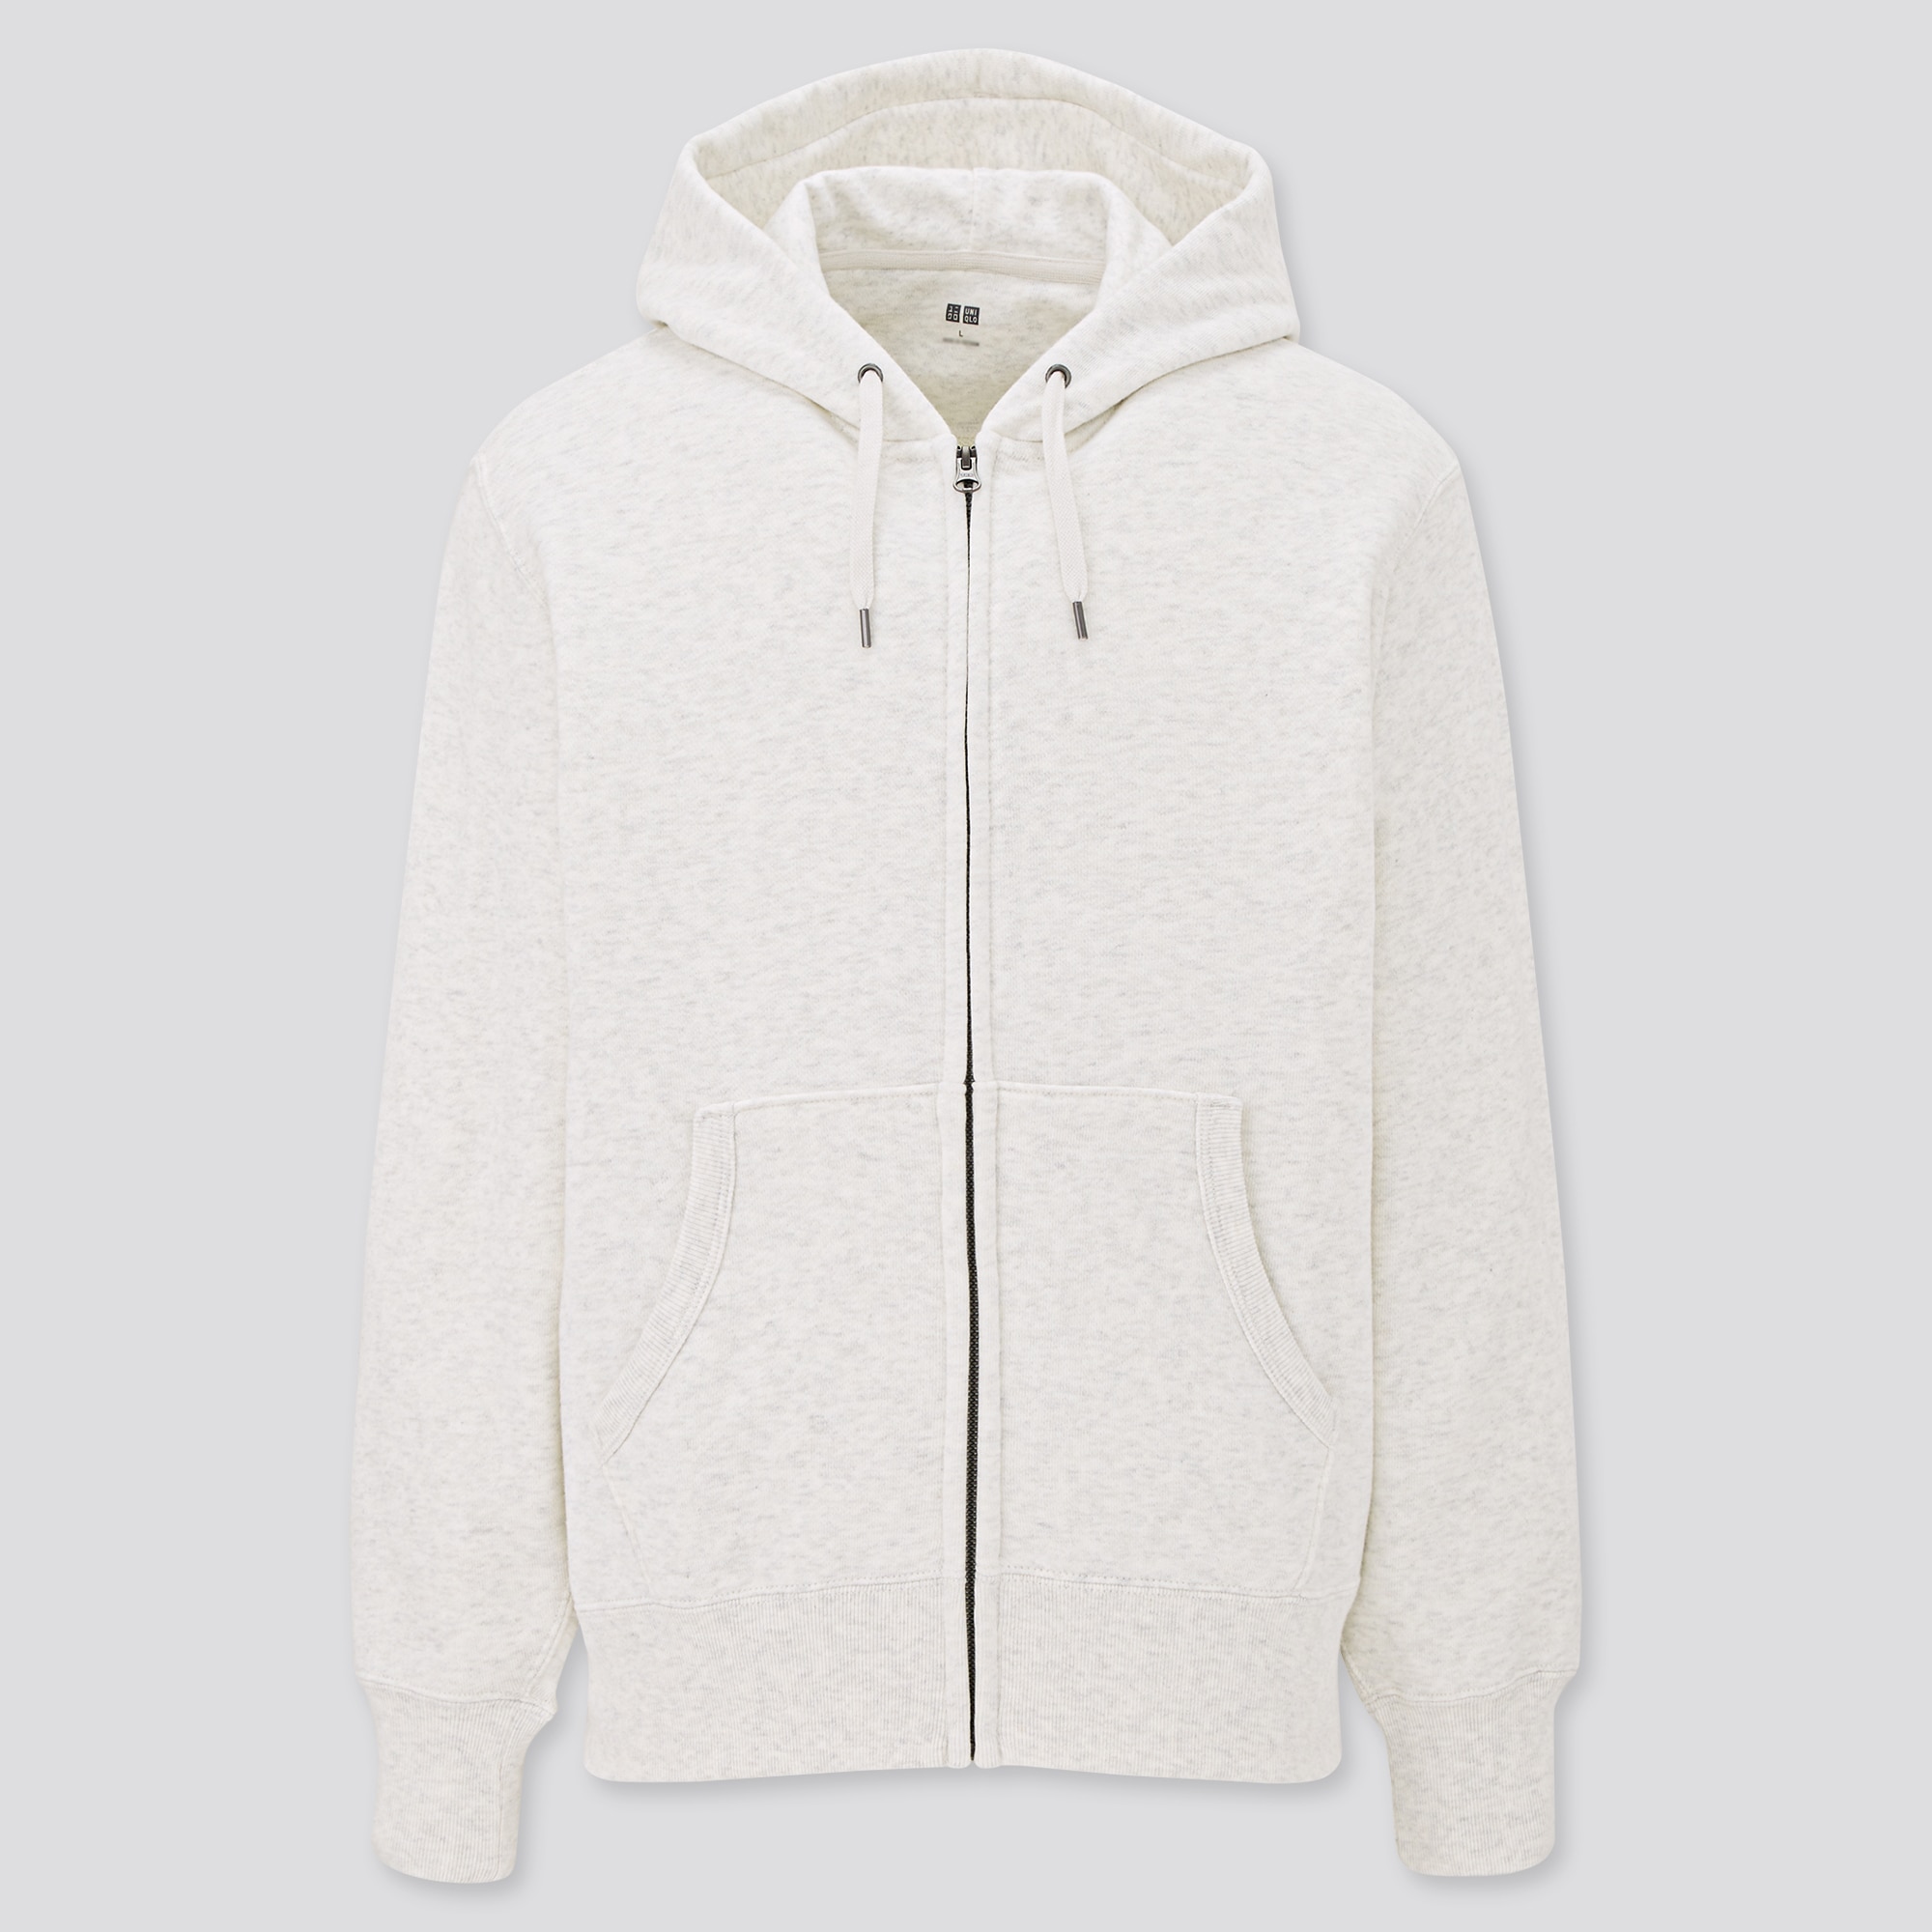 Sale > hoodies for men with zip > in stock